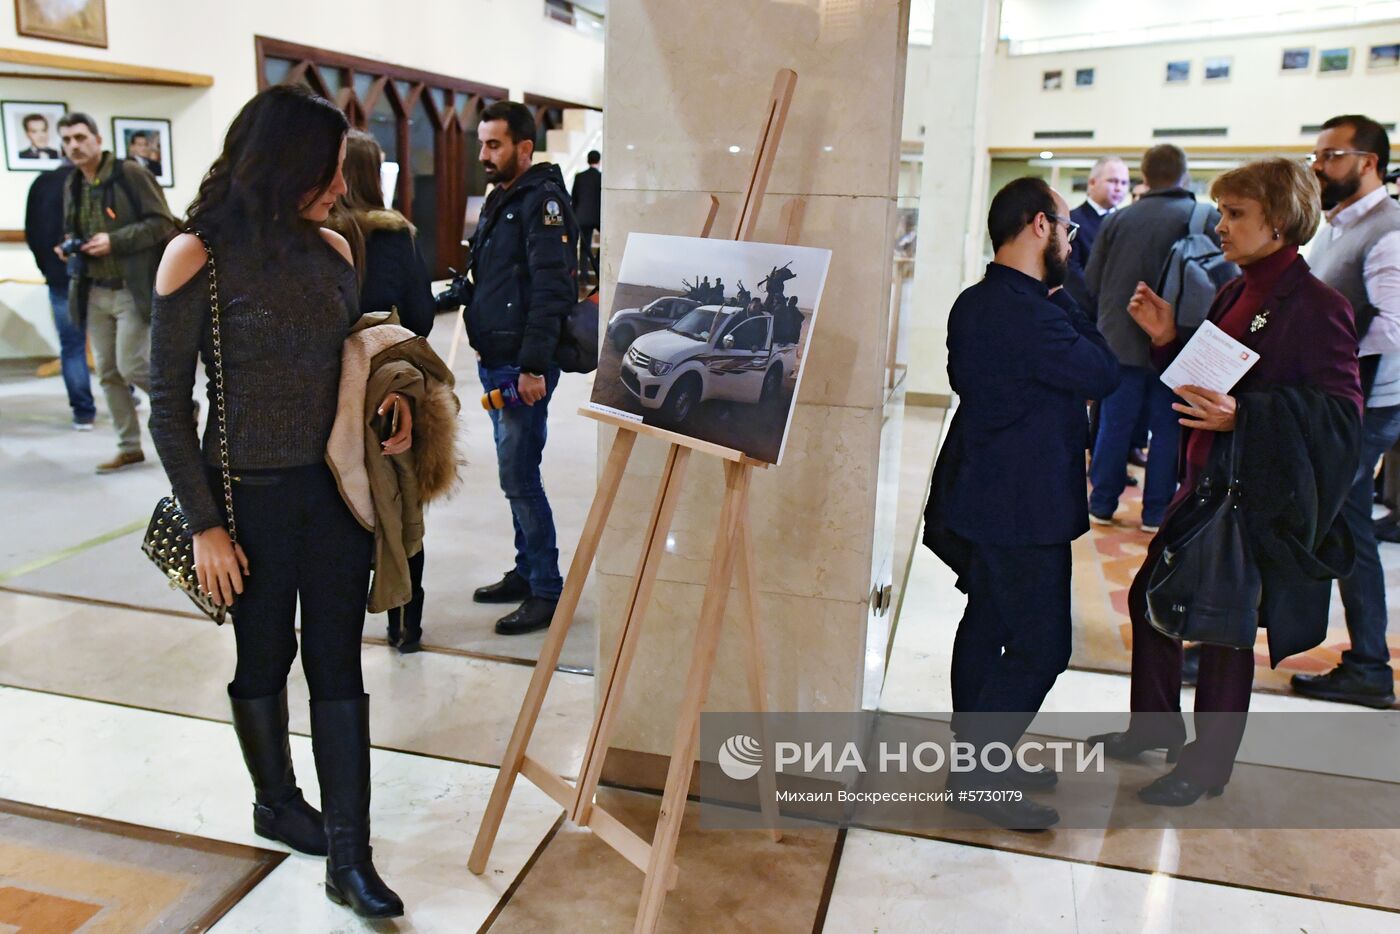 Фотовыставка корреспондента МИА «Россия сегодня» открылась в Дамаске